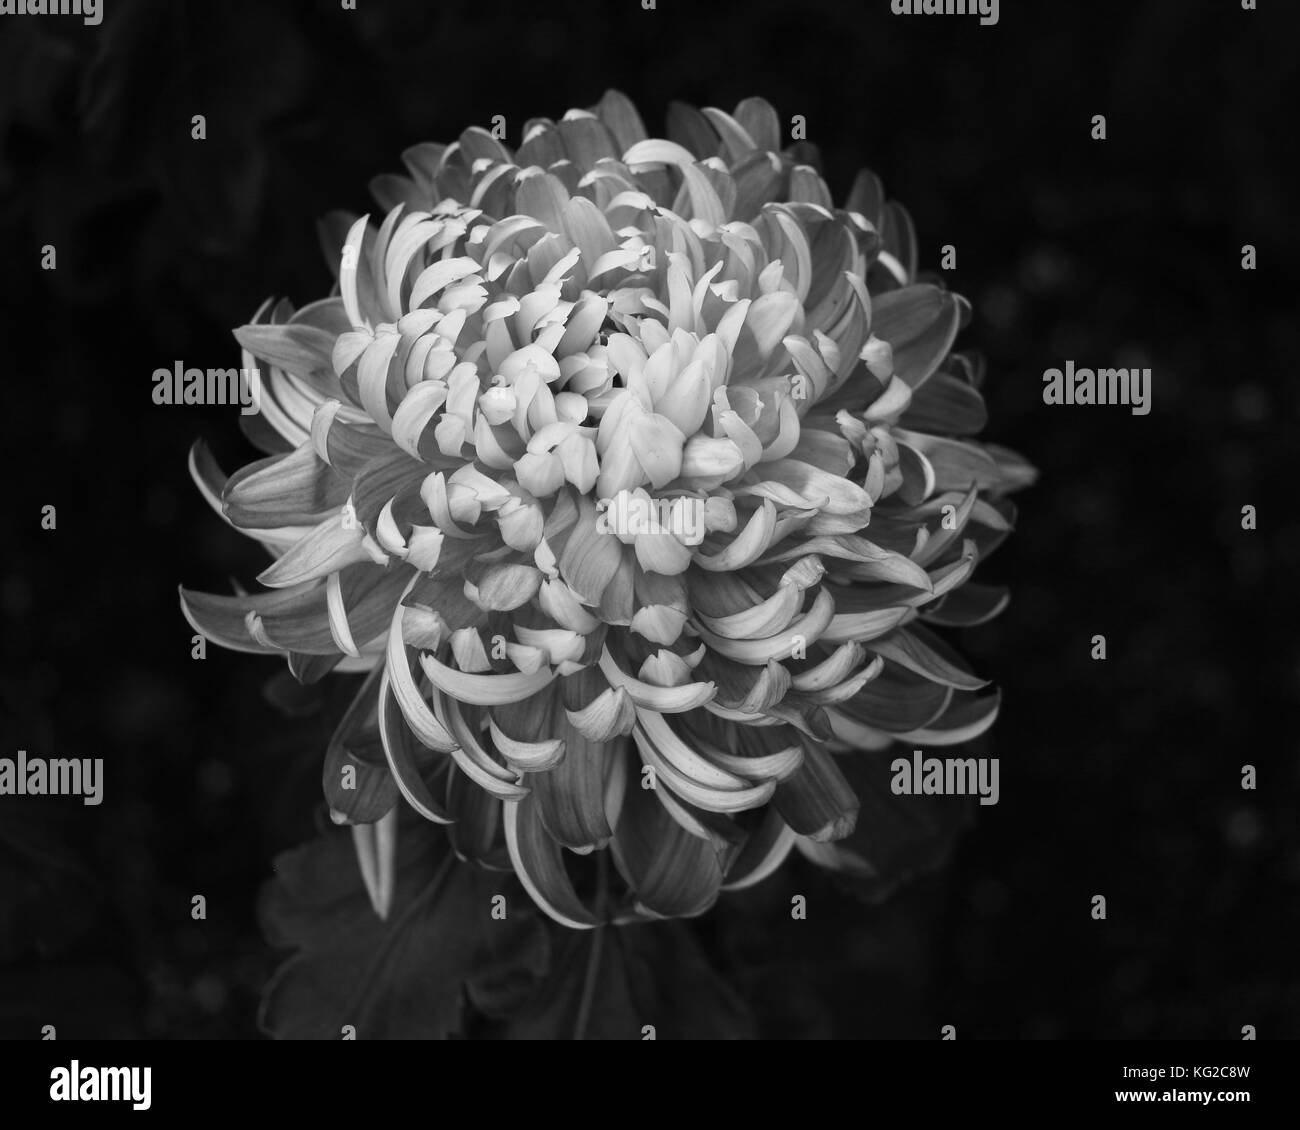 Der schwarze Hintergrund dieses einzigartigen Chrysantheme Nahaufnahme Muster, schafft einen Kontrast zu den weichen schwarzen und weißen Blütenblätter in der Mitte der Blüte Stockfoto